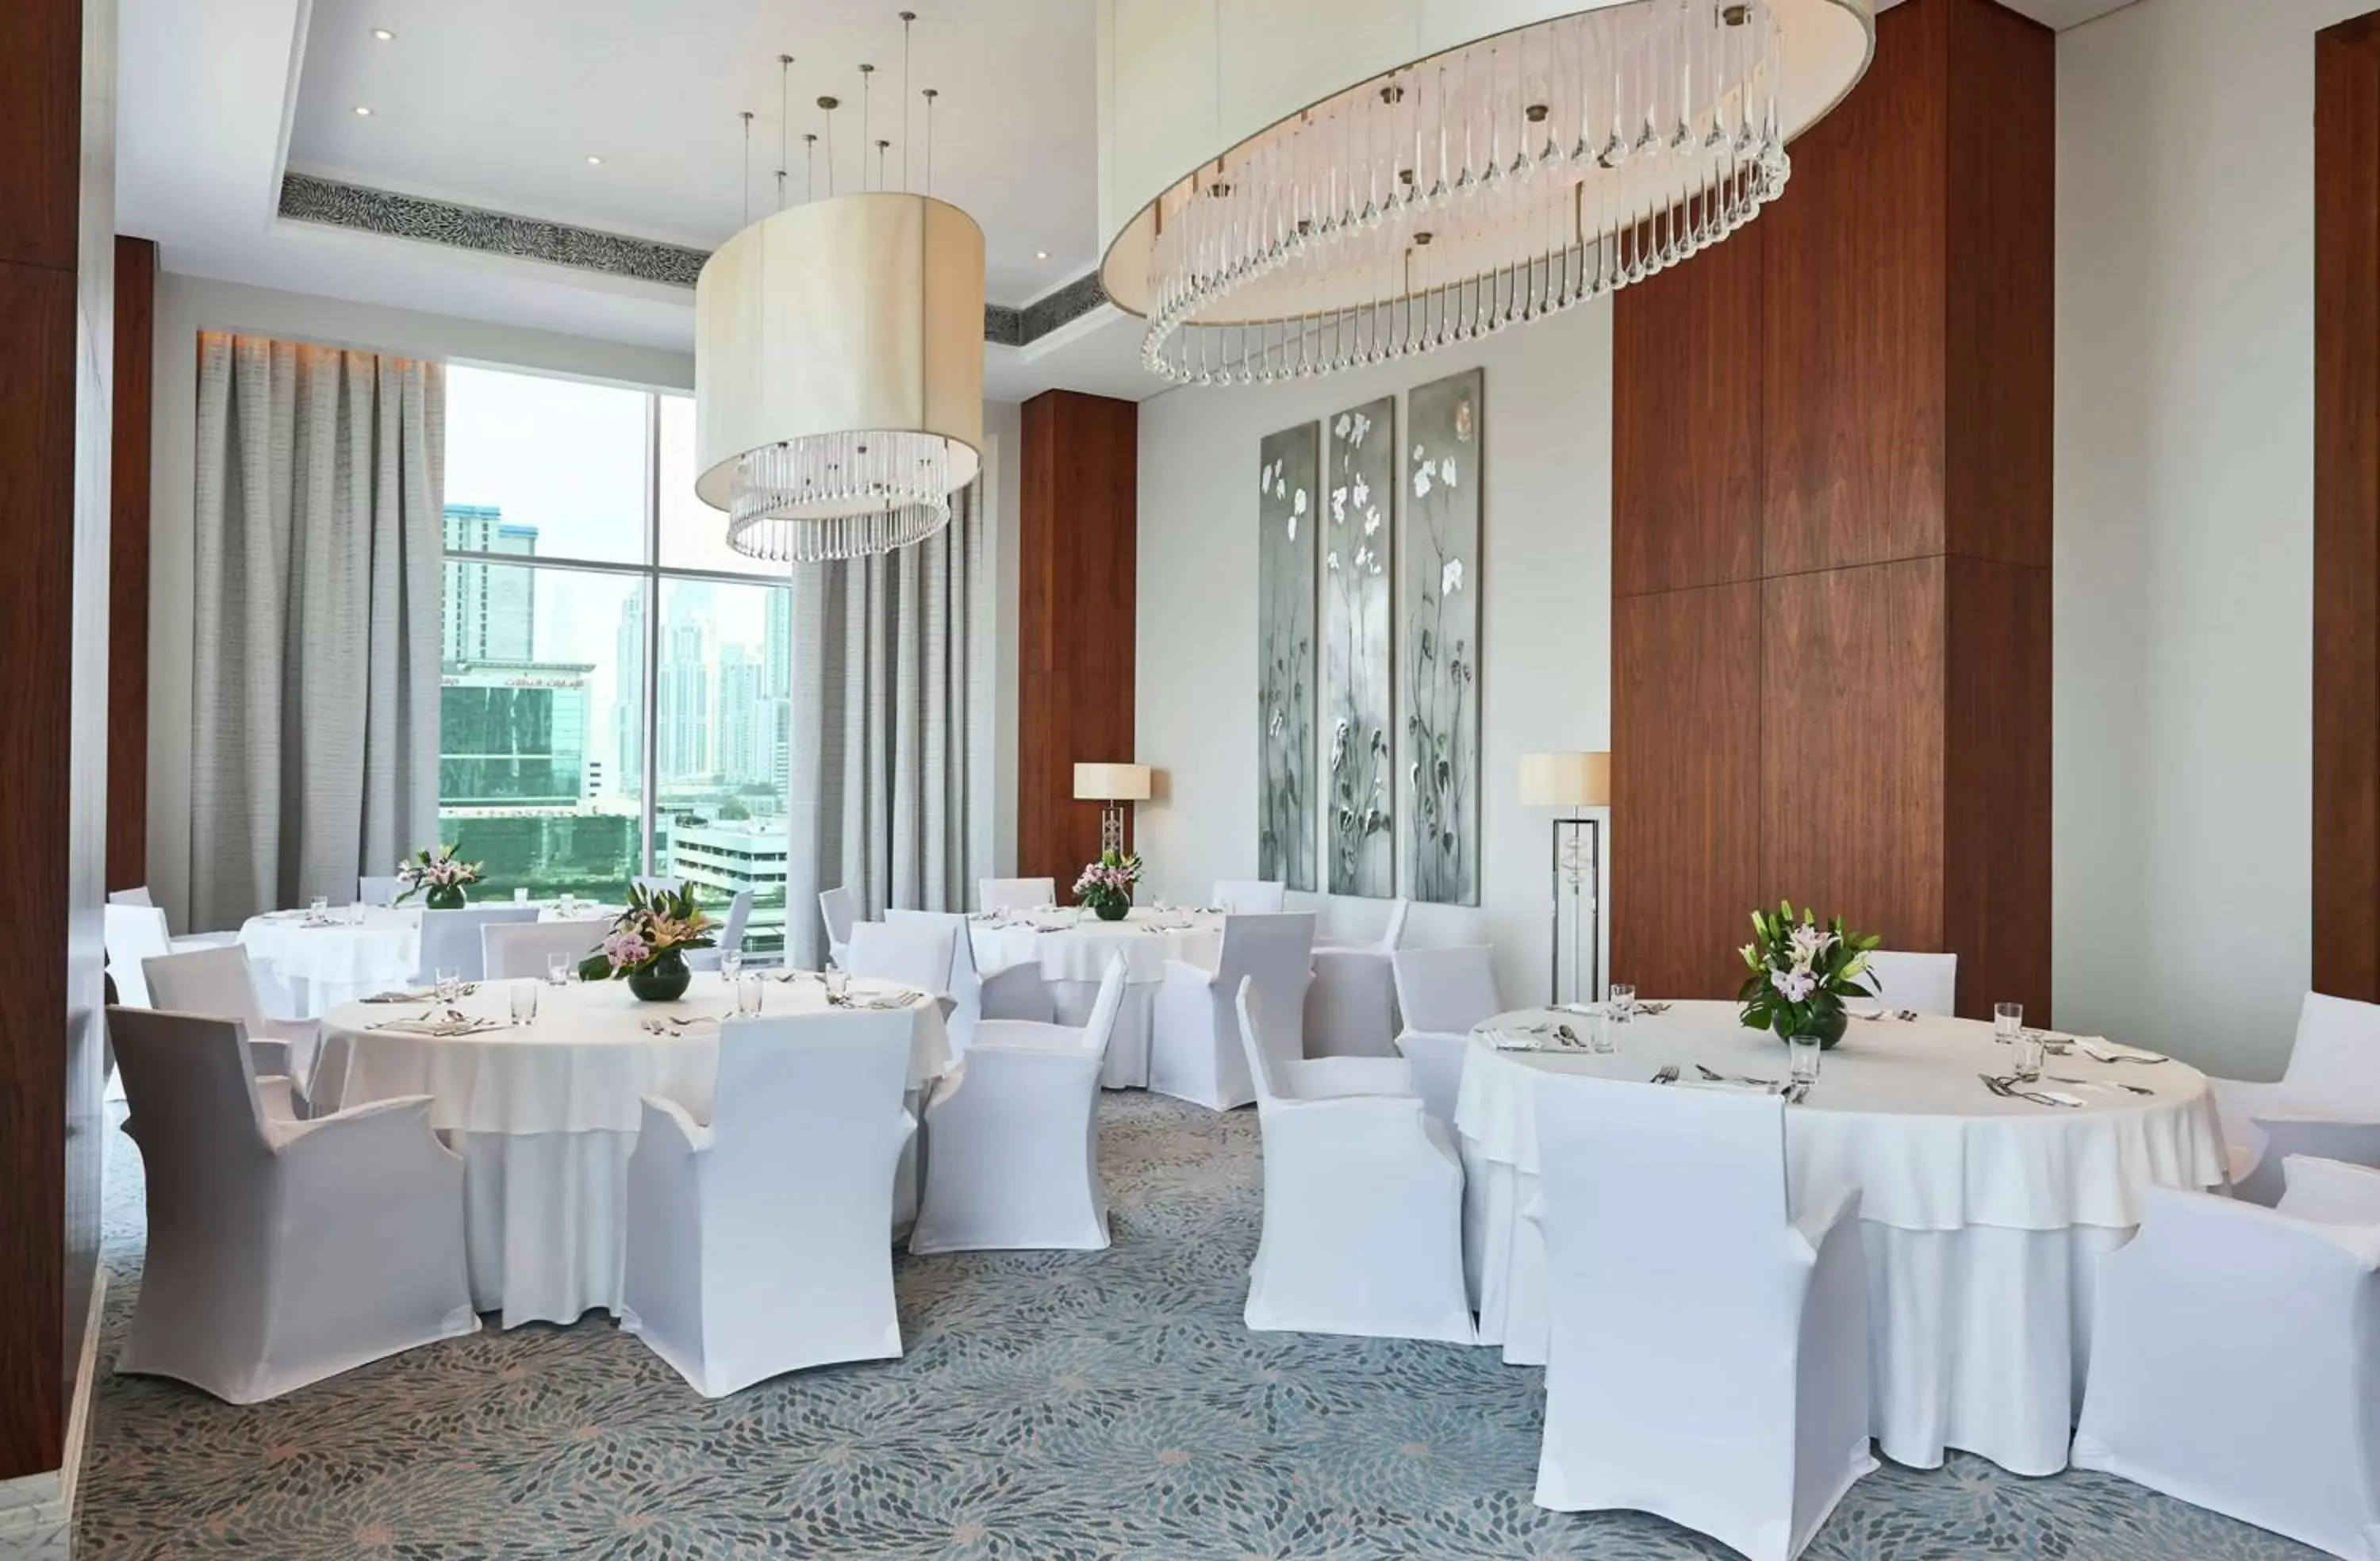 Meeting/conference room, Banquet Facilities in Hilton Dubai Al Habtoor City